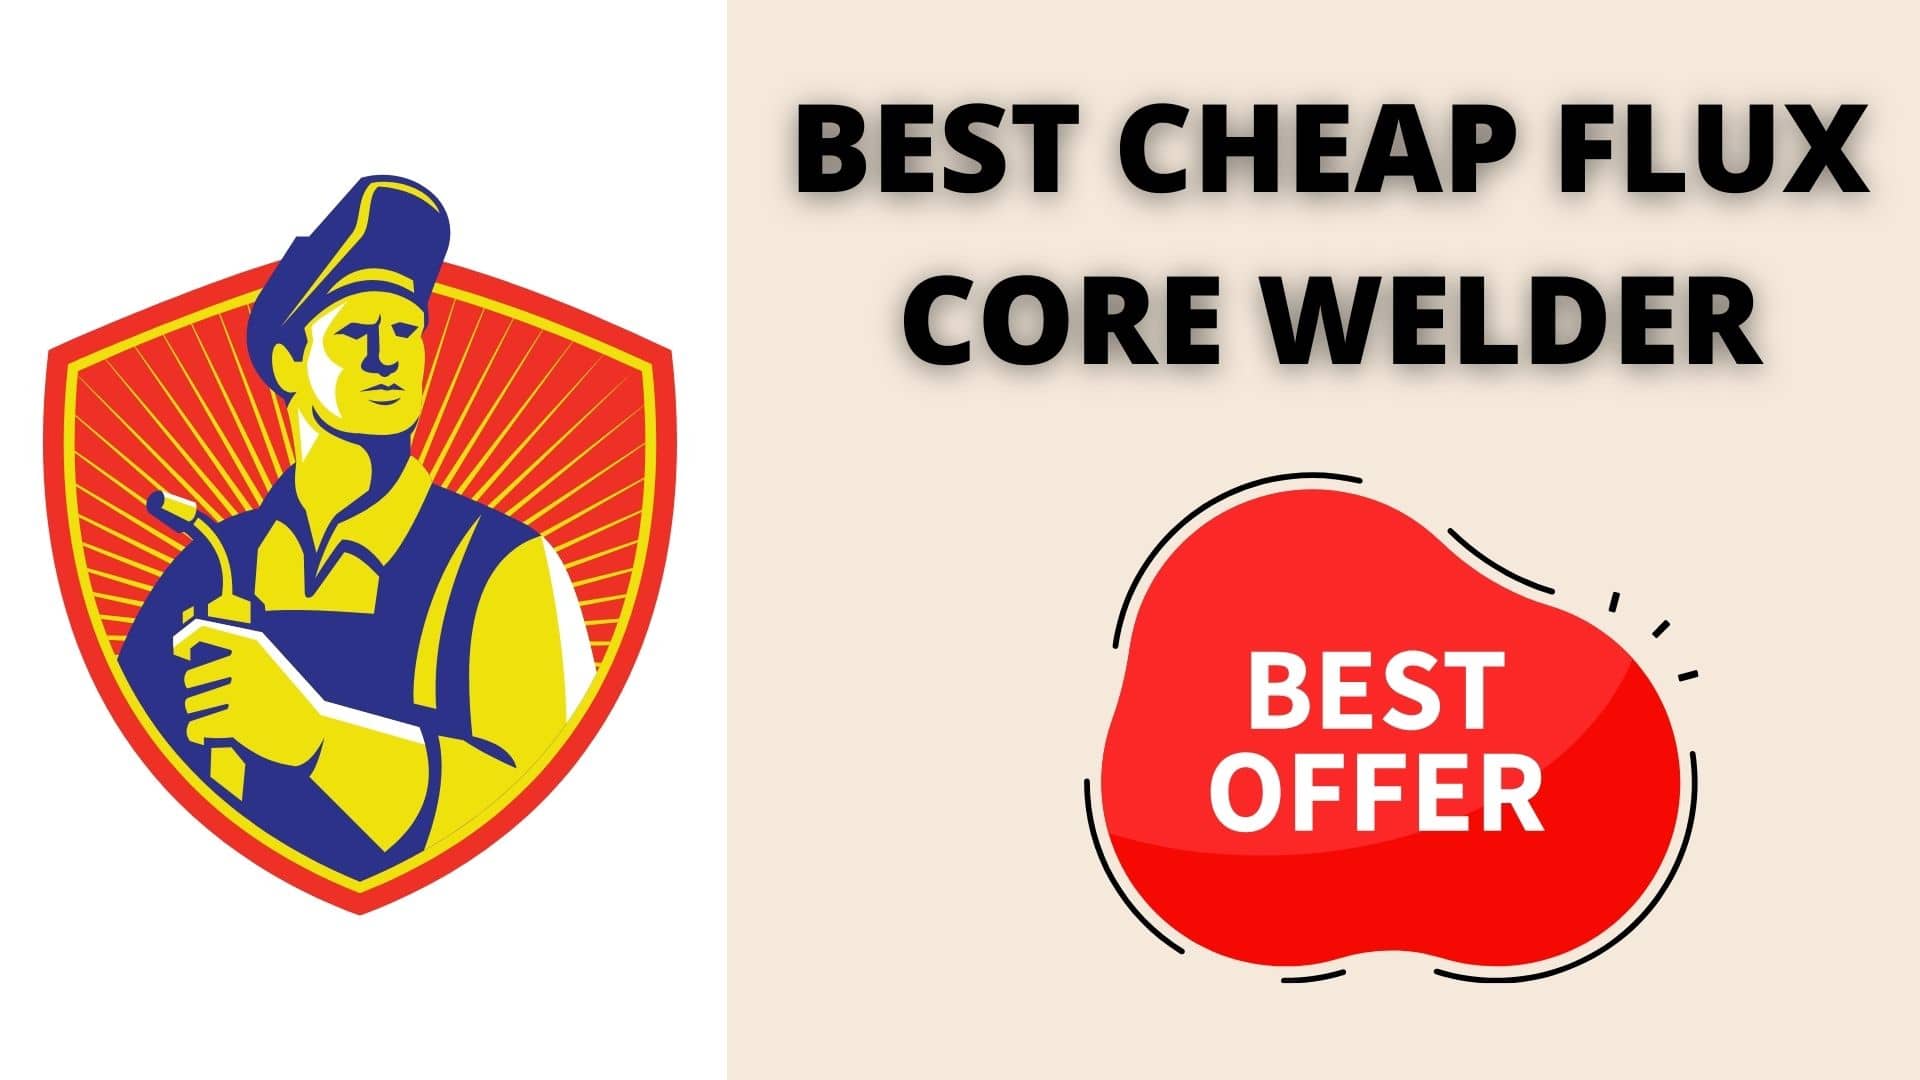 Best Cheap Flux Core Welder